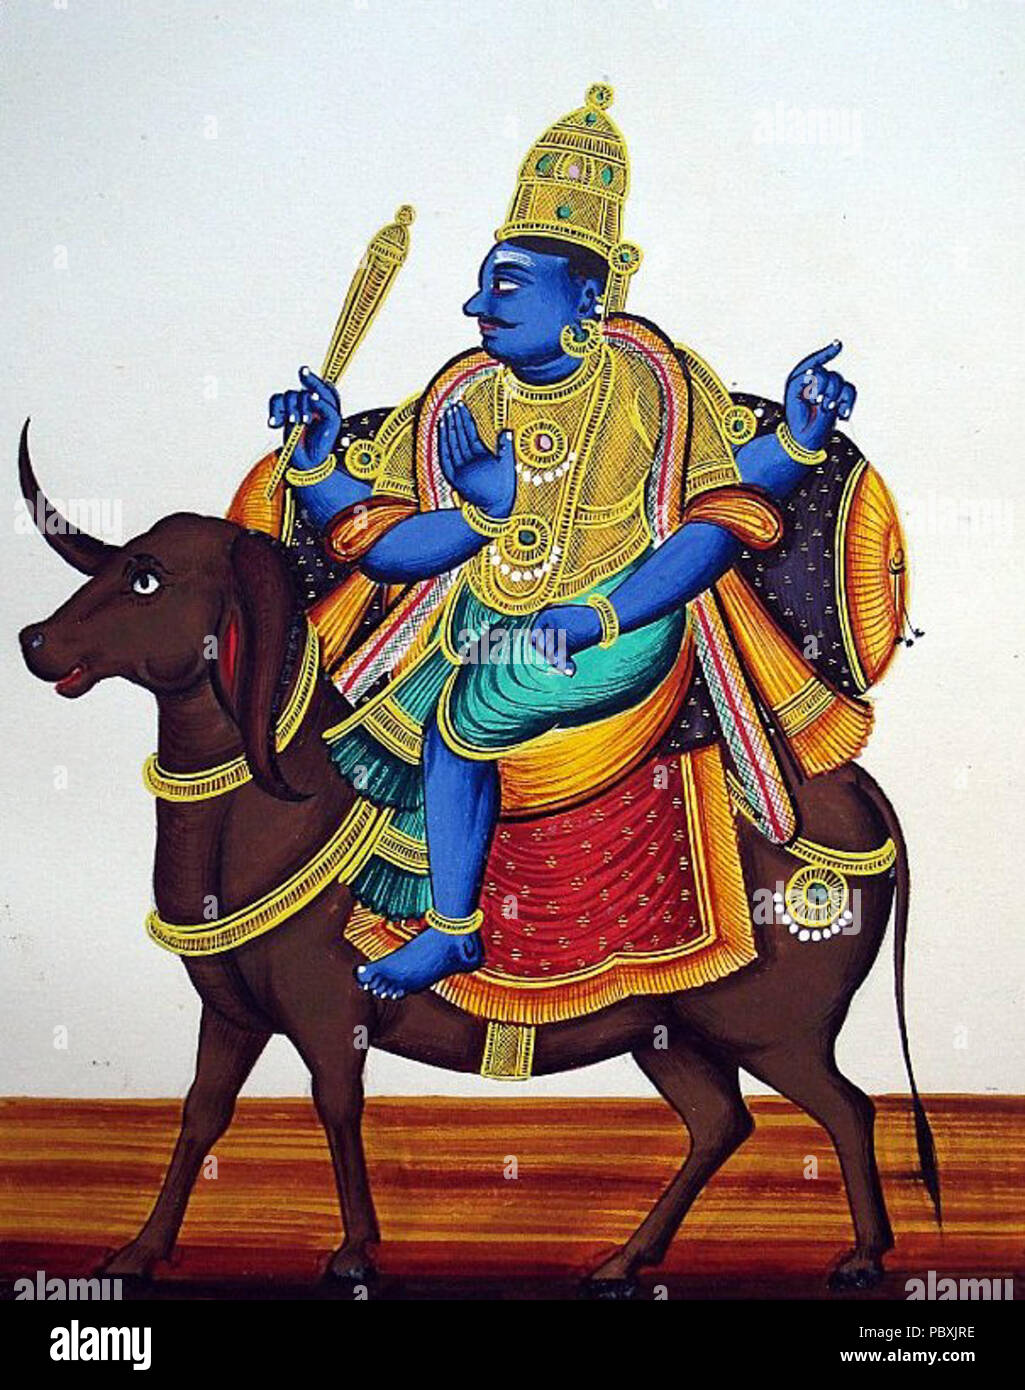 214 quatre bras et teint foncé-Yama se déplace sur son bejeweled et caparisoned buffalo. Dans son coin supérieur droit est le danda (personnel) (portrait) Banque D'Images